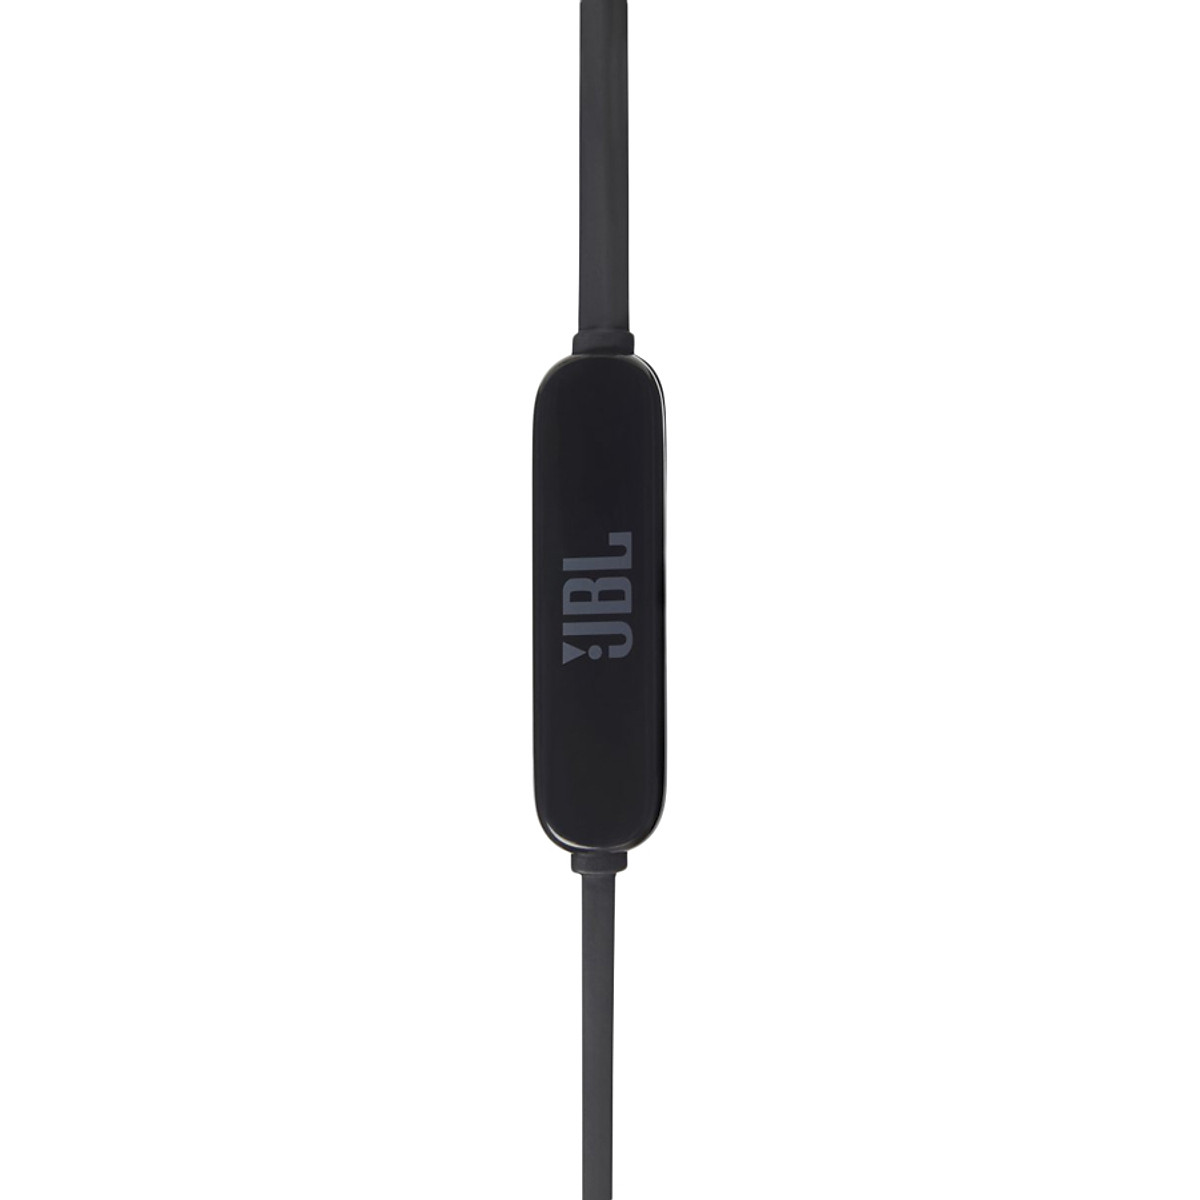 Tai Nghe Bluetooth Thể Thao JBL T110BT - Hàng Chính Hãng, có thiết kế không dây cho ae dùng